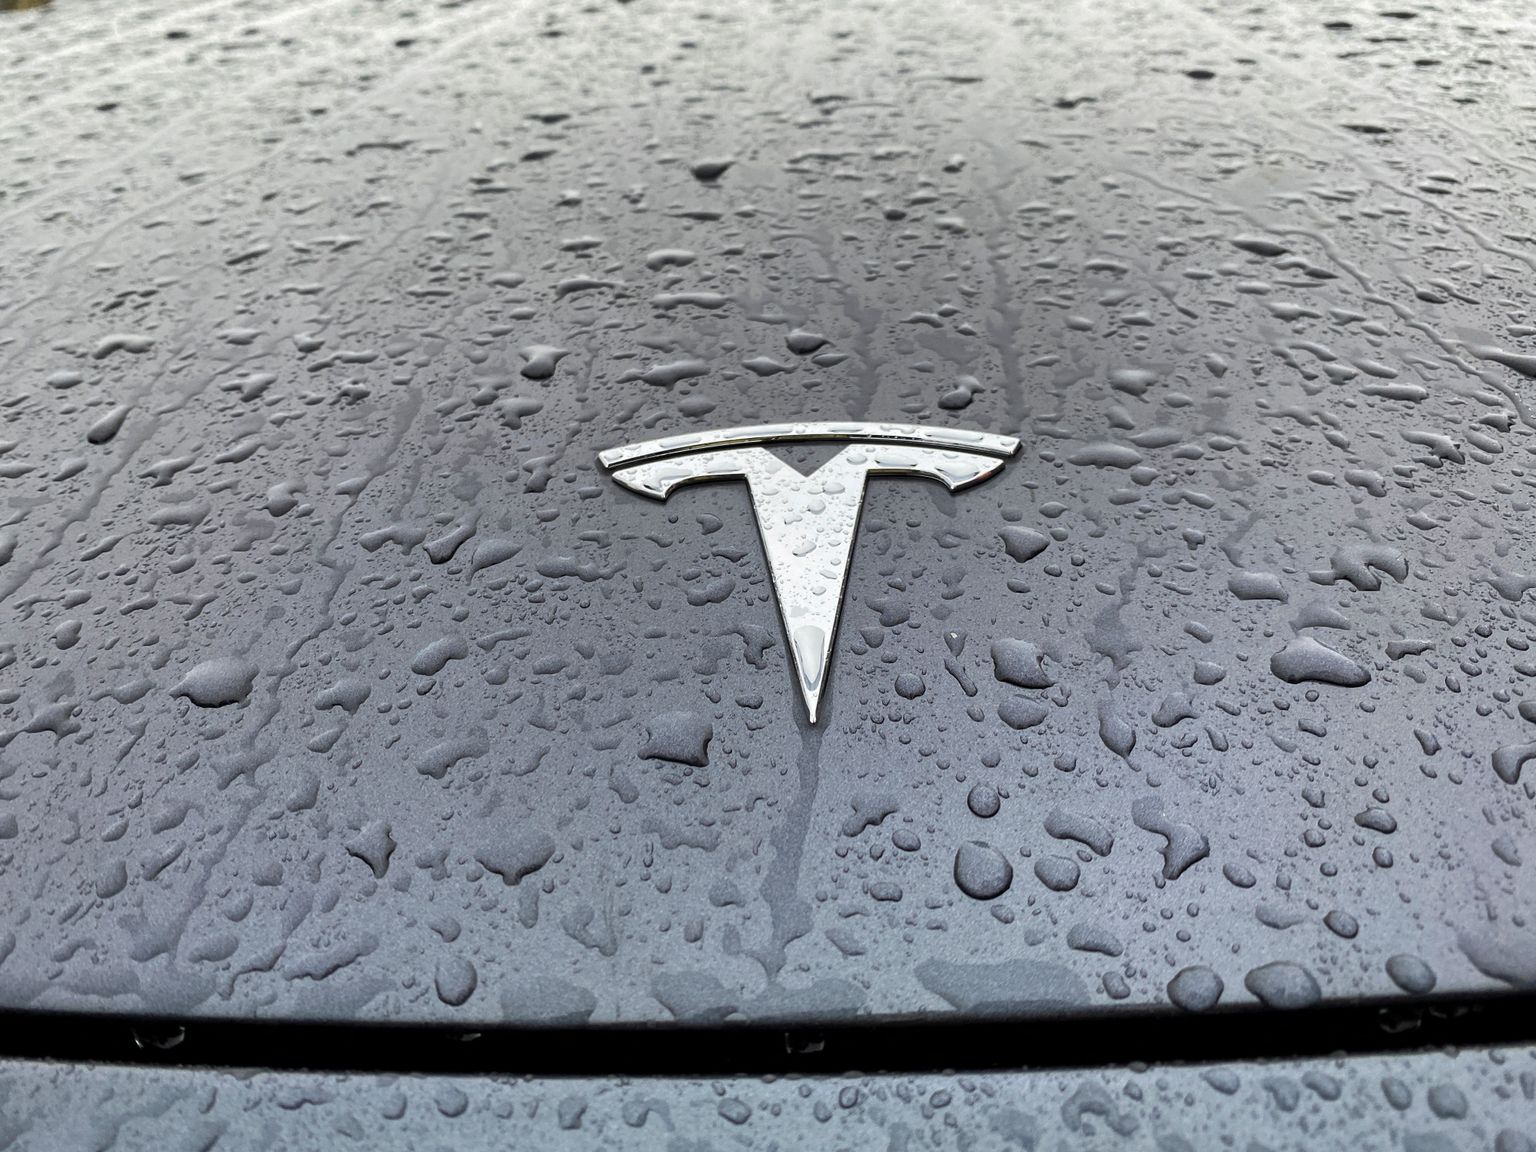 Tesla logo.